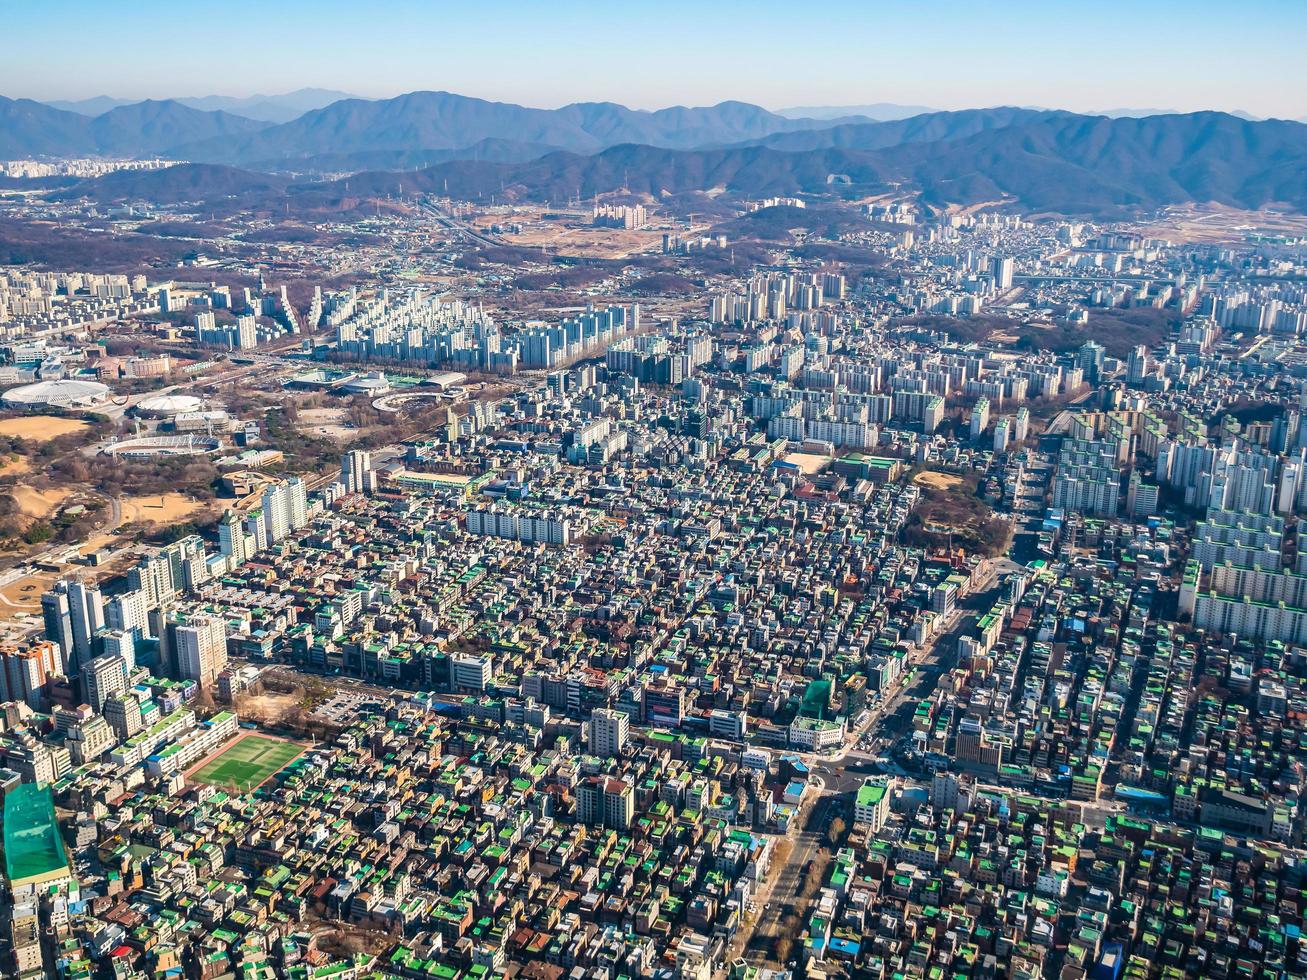 vista aerea della città di seoul, corea del sud foto